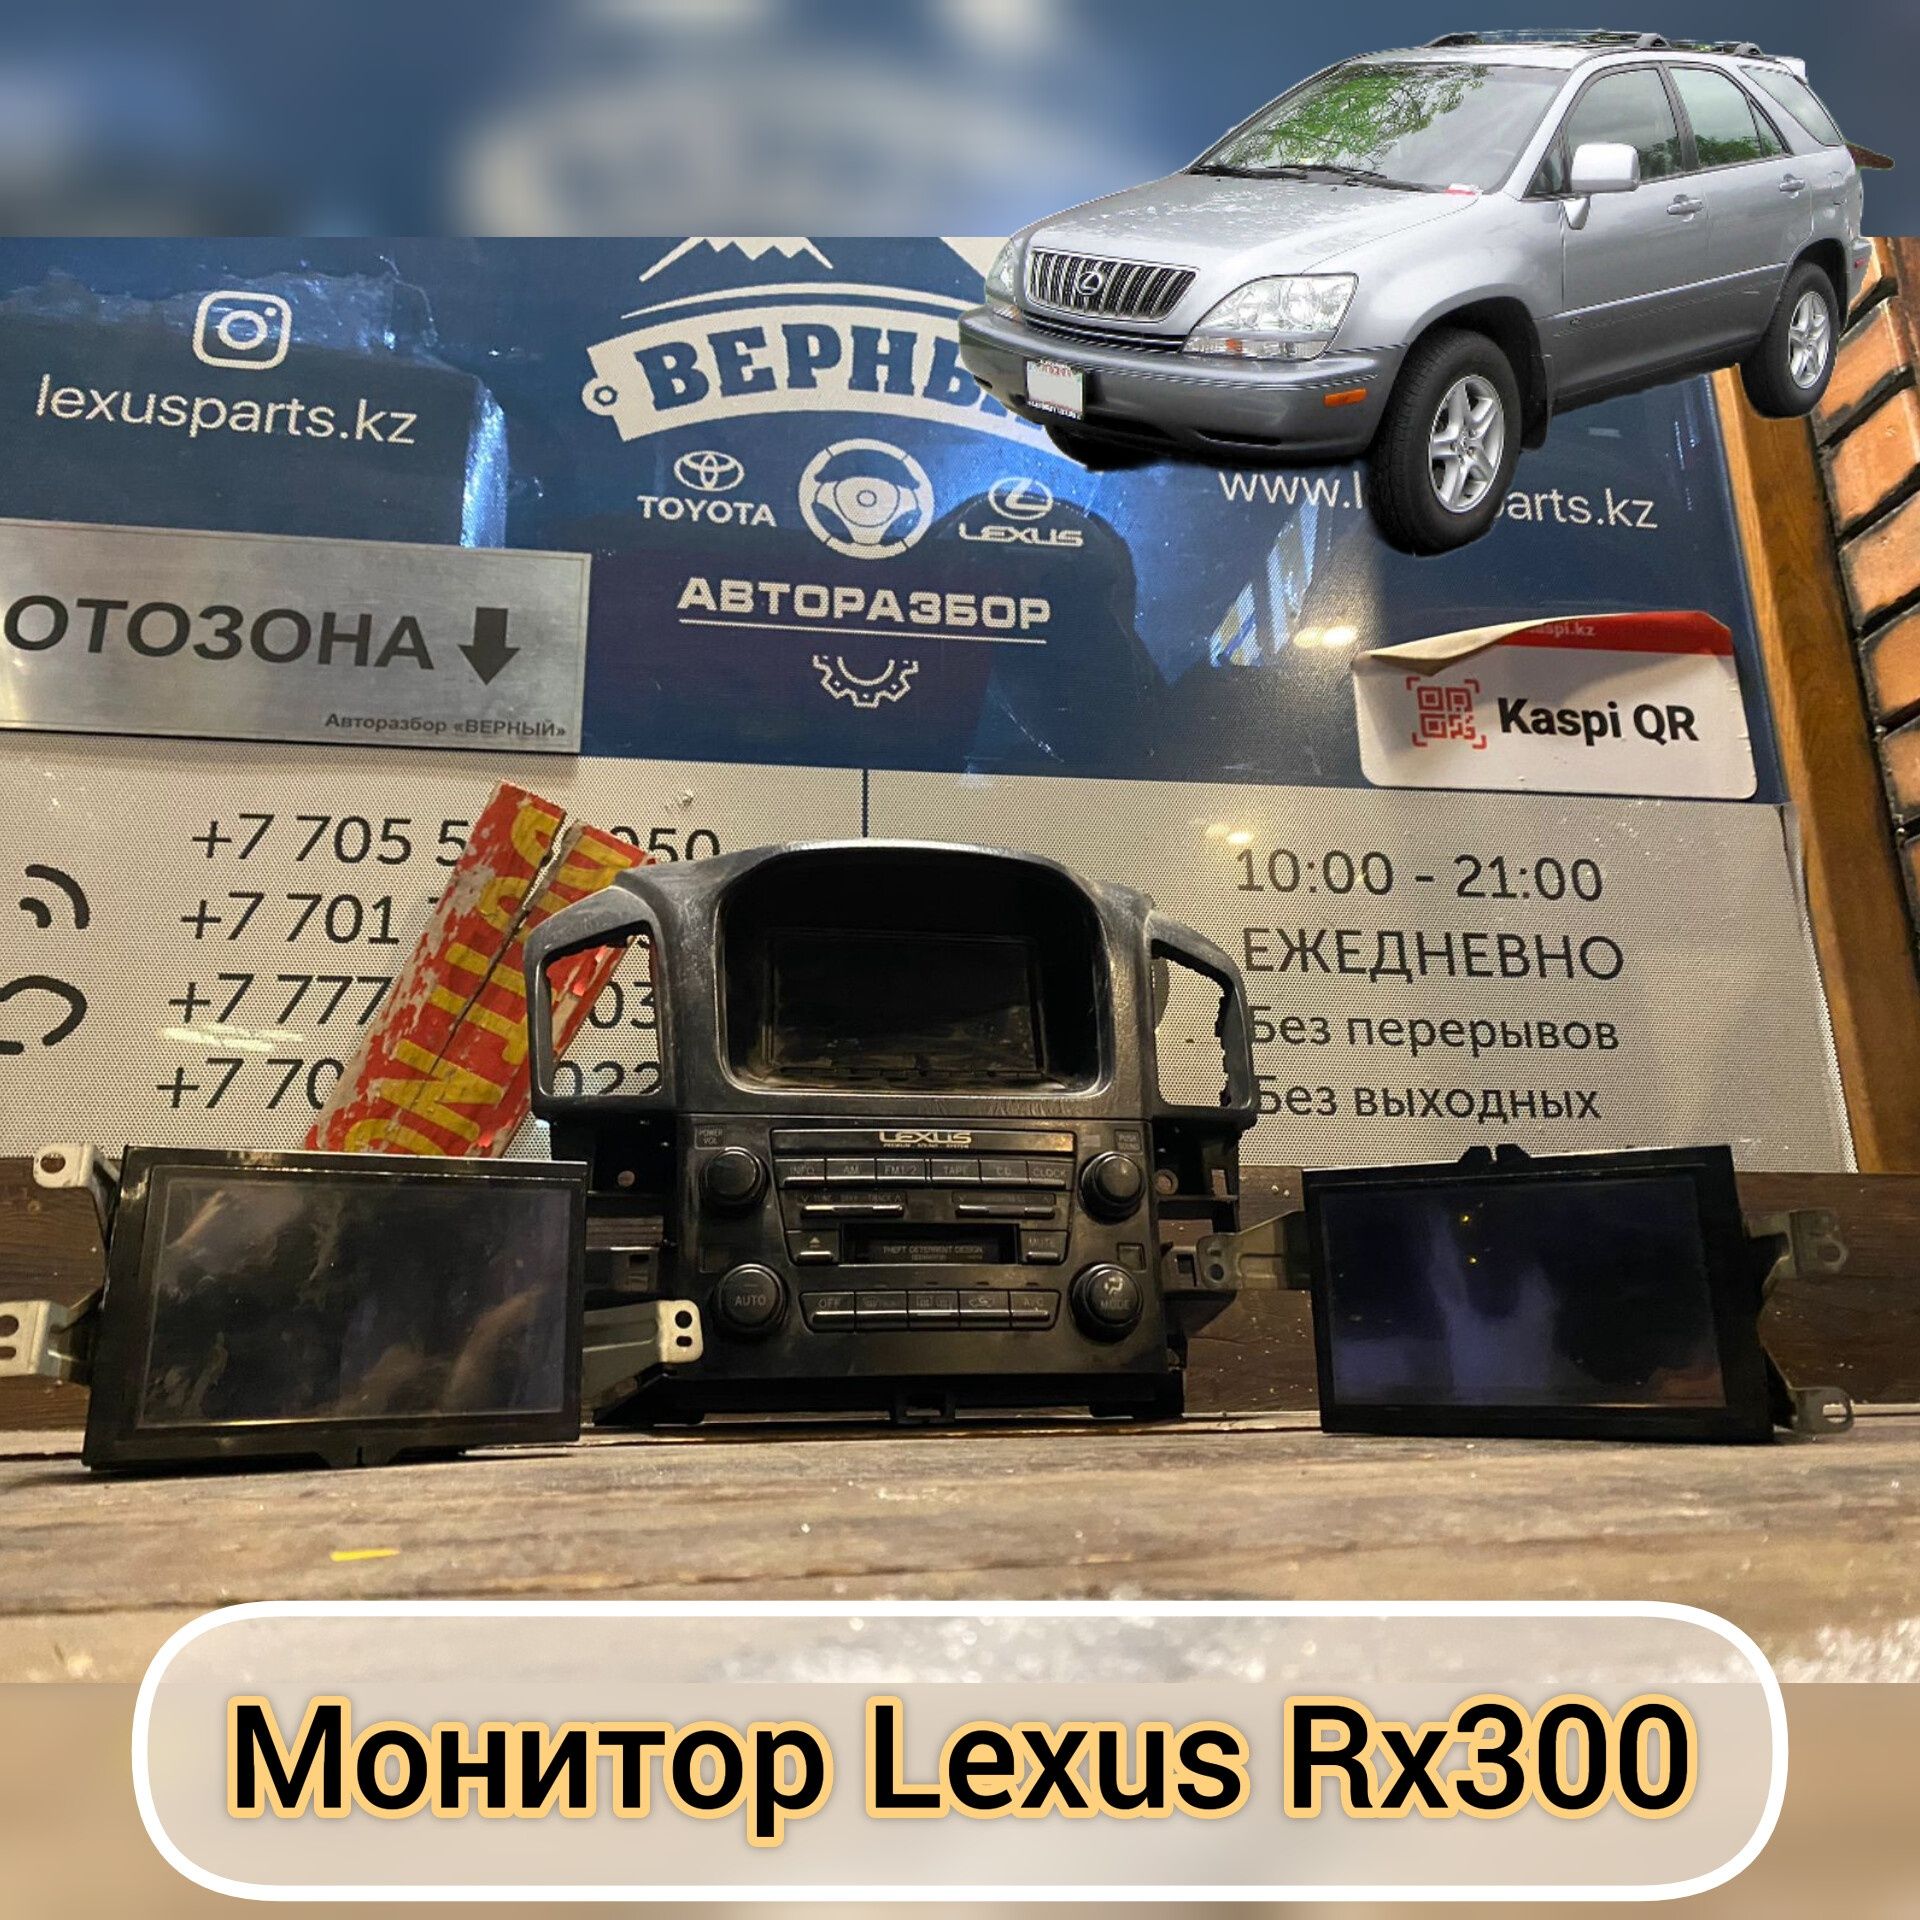 Монитор Lexus Rx300